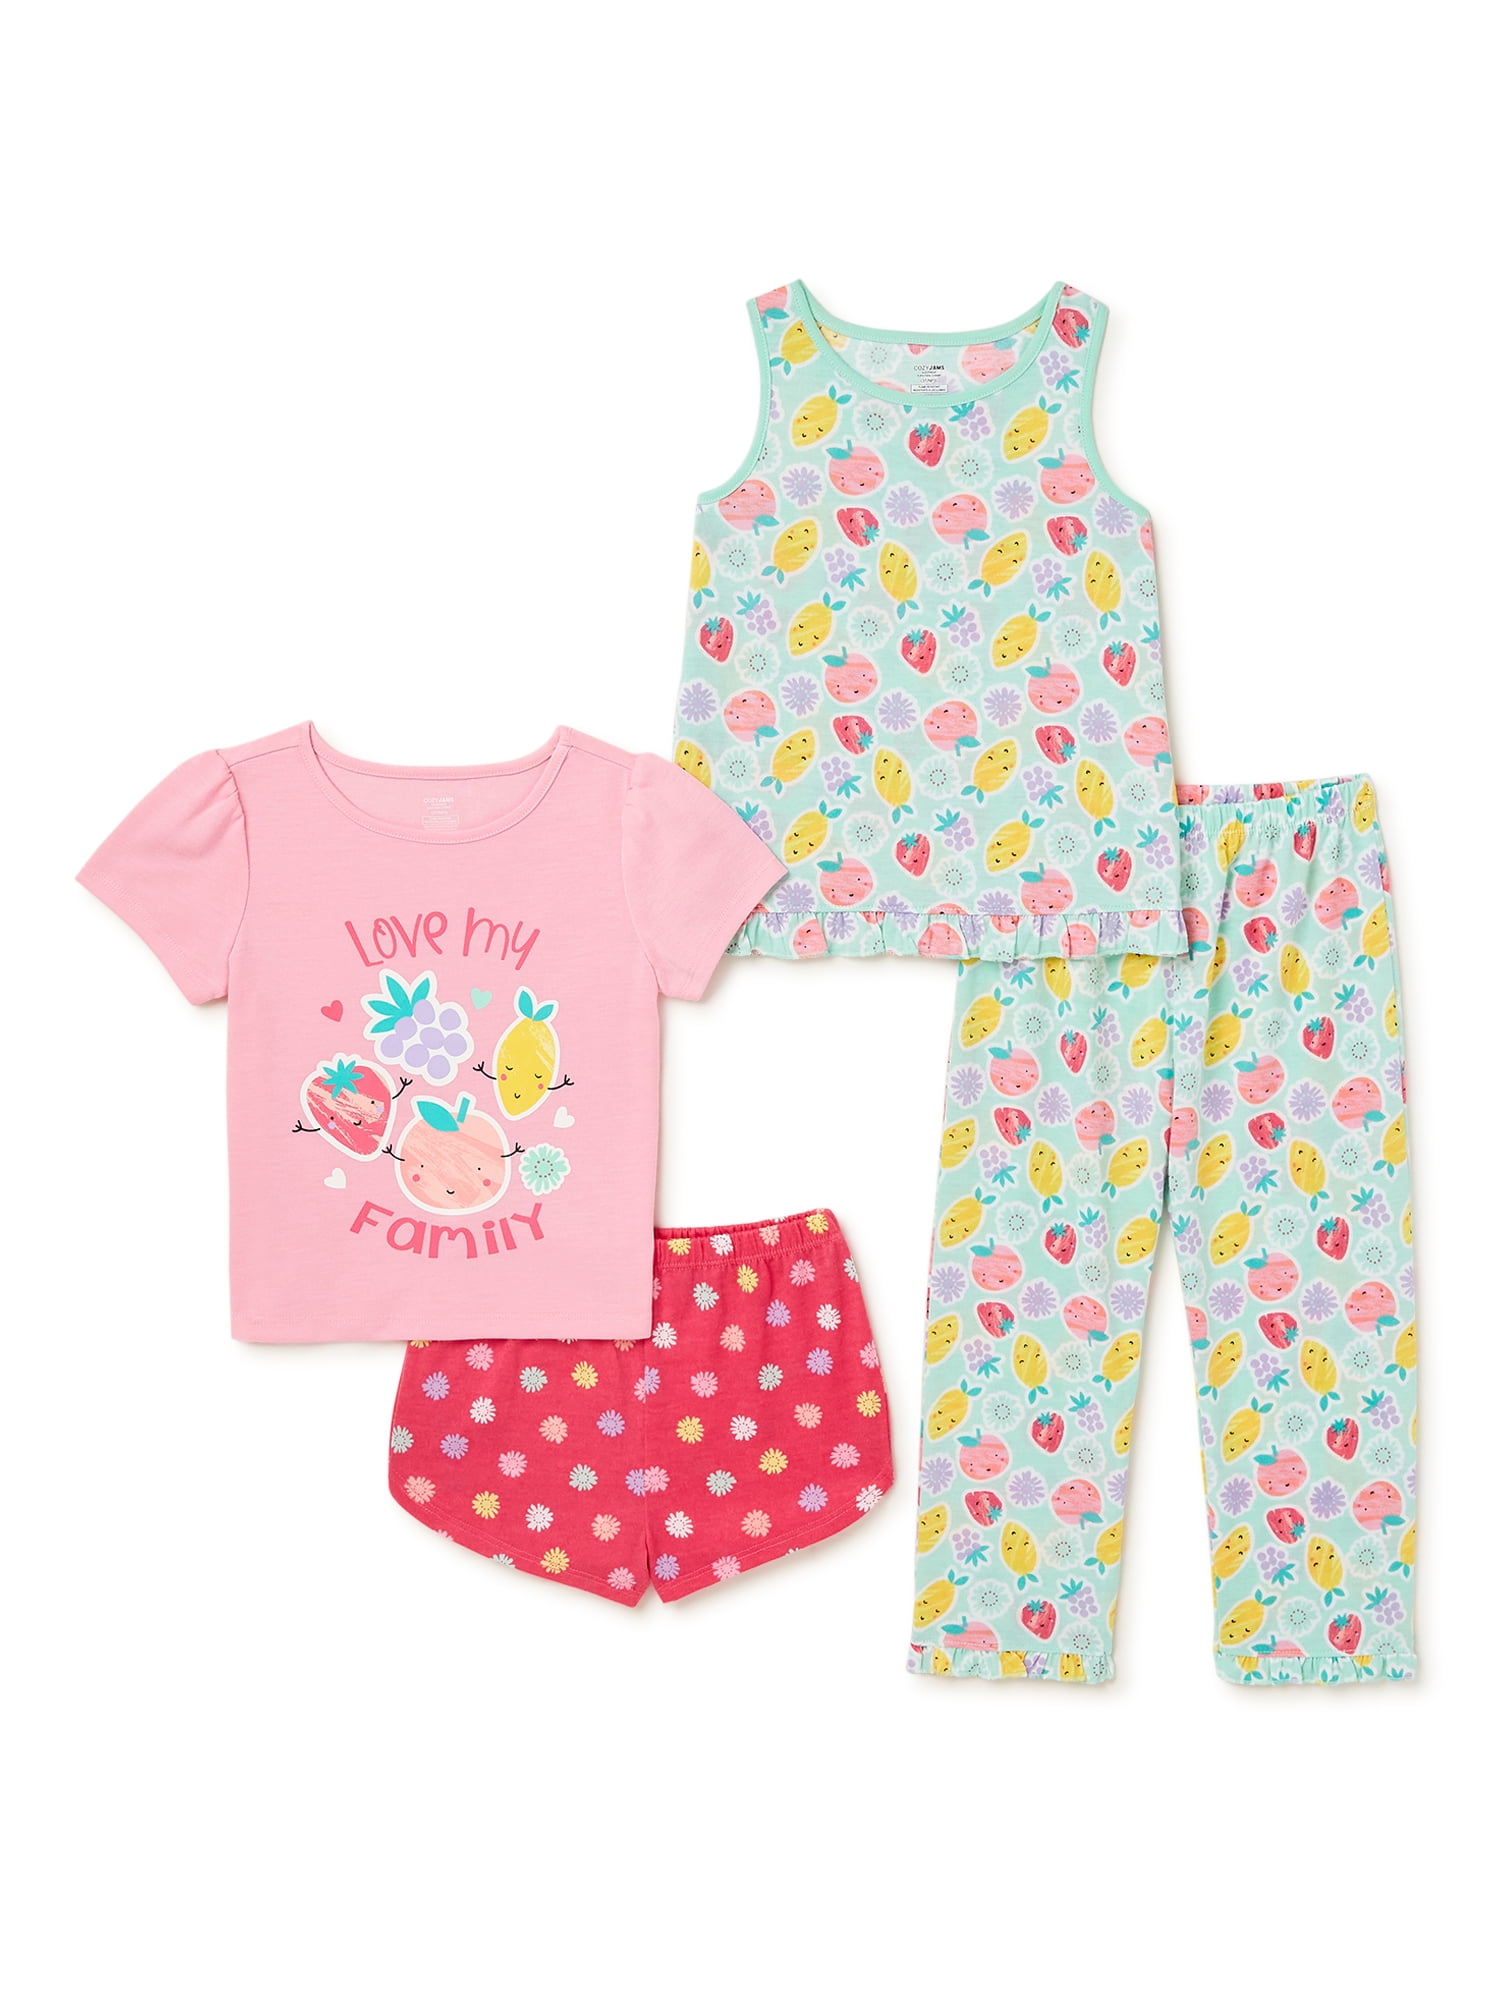 Cozy Jams Baby and Toddler Boy Pajama Sleepwear Set, 4-Piece, Sizes 12M-5T  